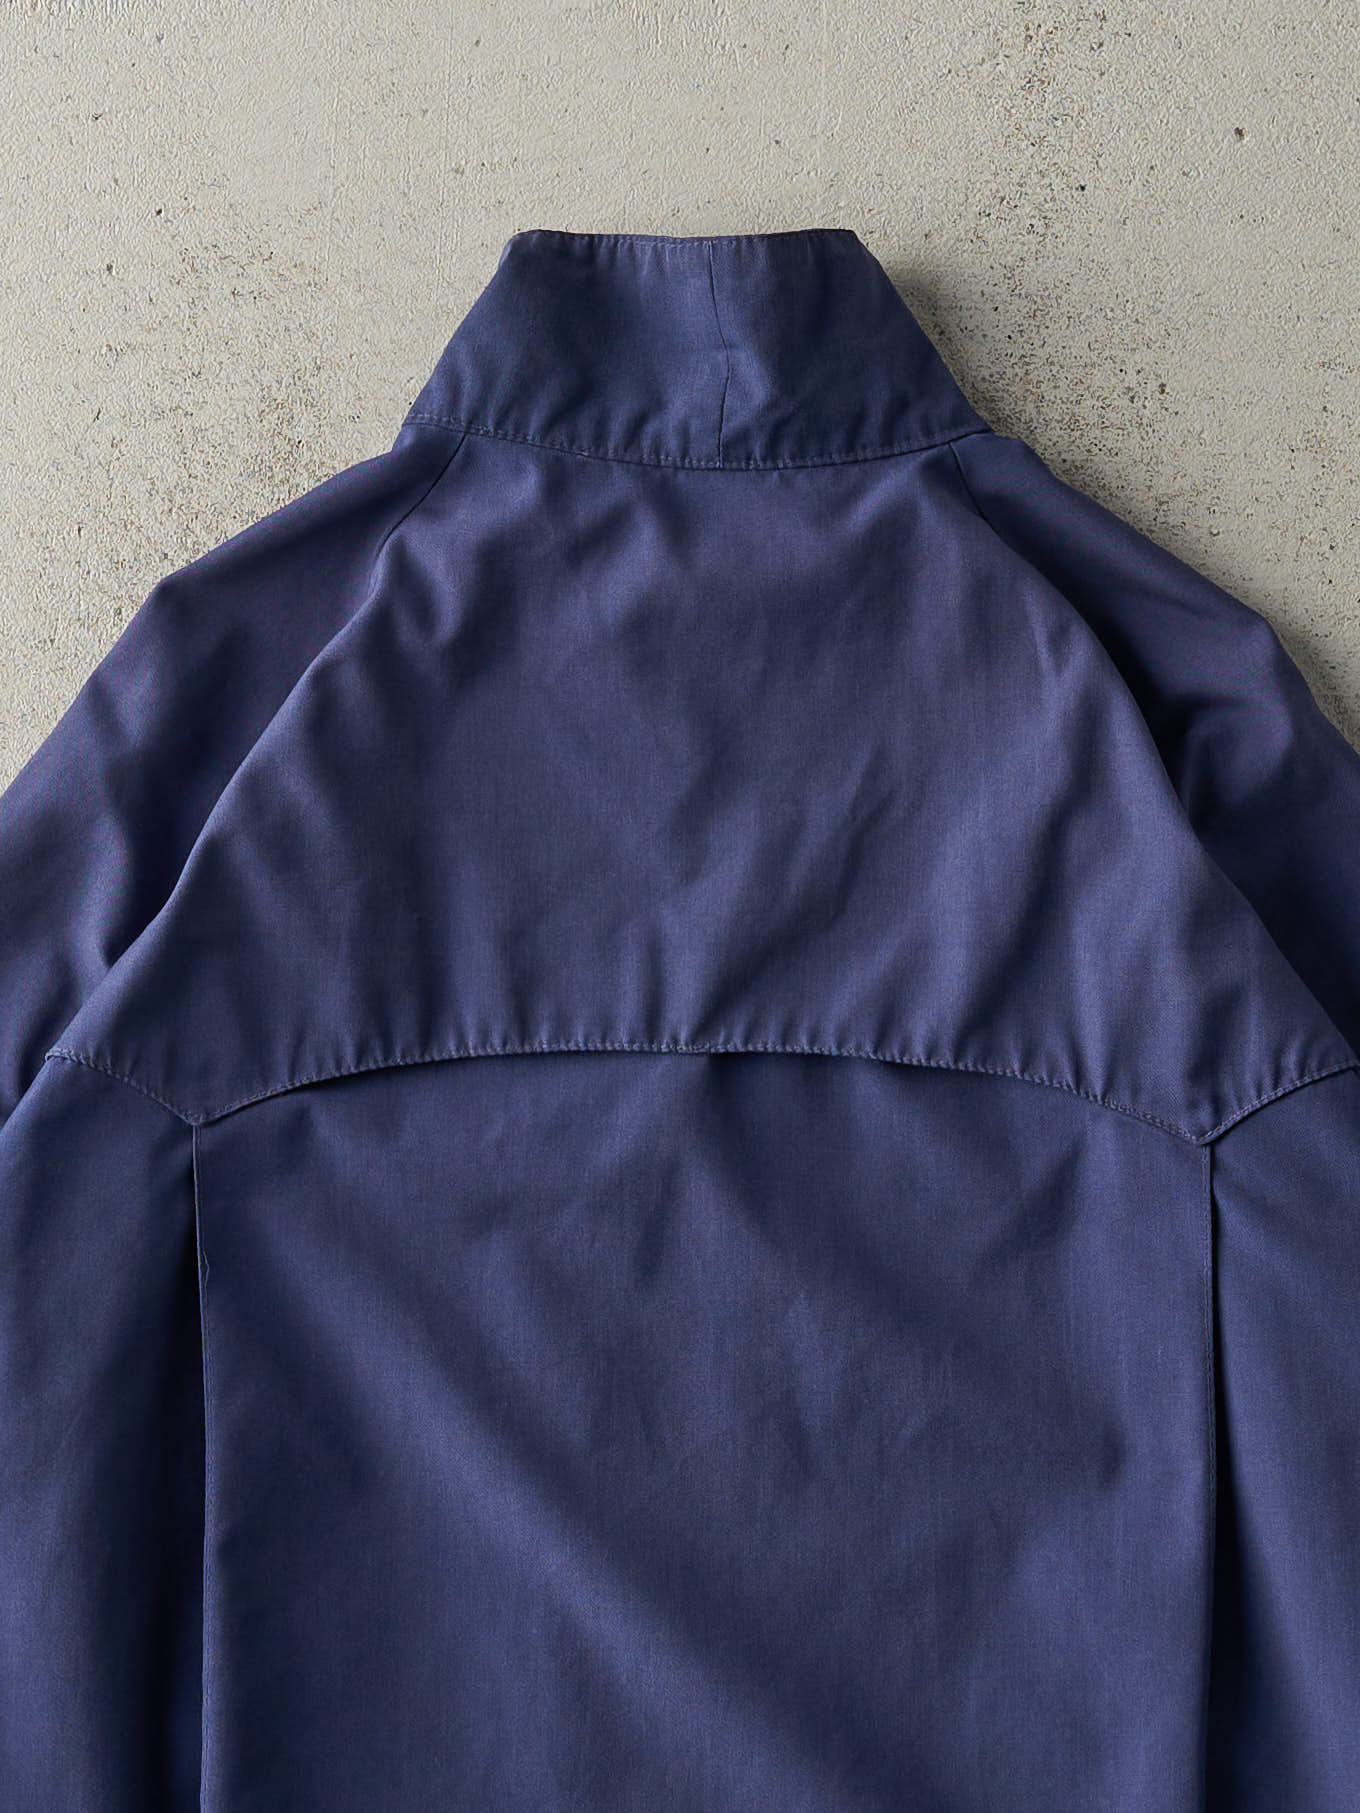 Vintage 80s Navy Blue Paramount Harrington Jacket (L)